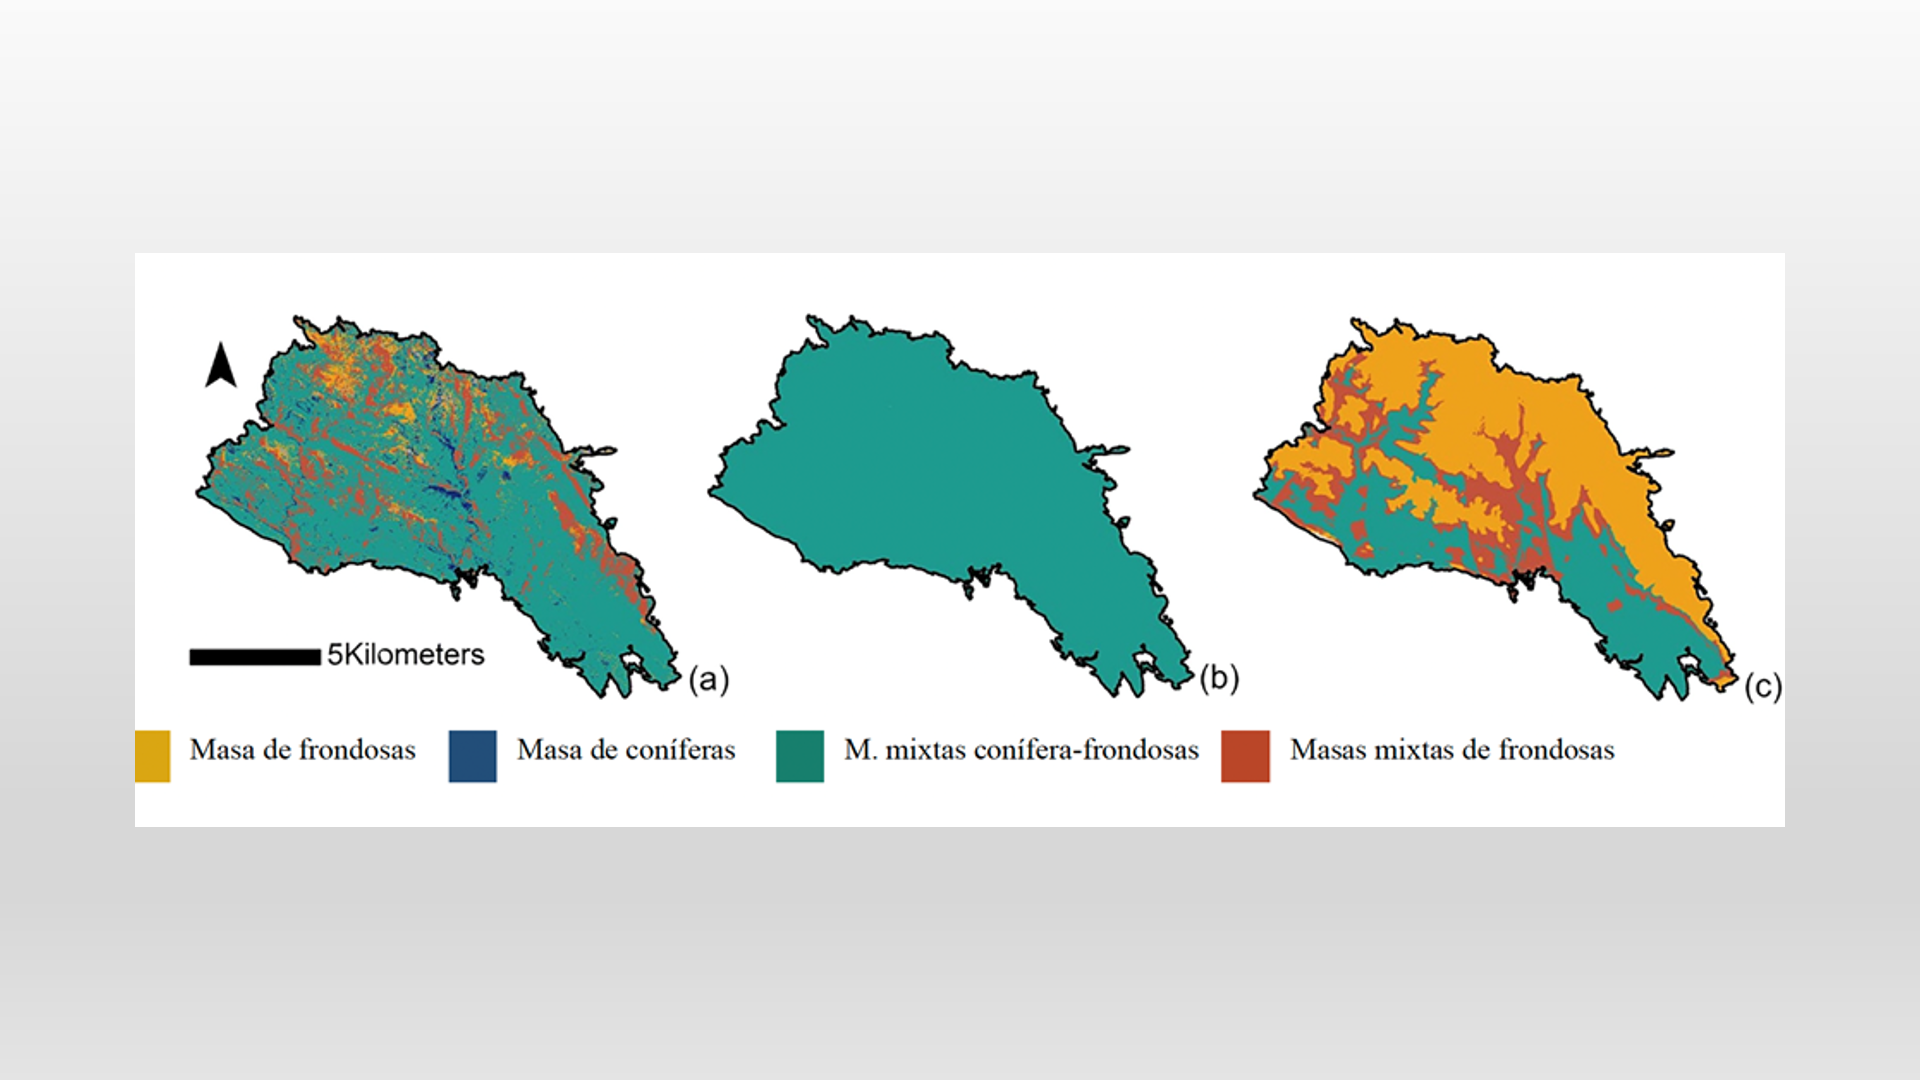 Imagen de los mapas resultado de la aplicación de modelos de nicho a 3 escenarios distintos (descritos en pie de imagen)